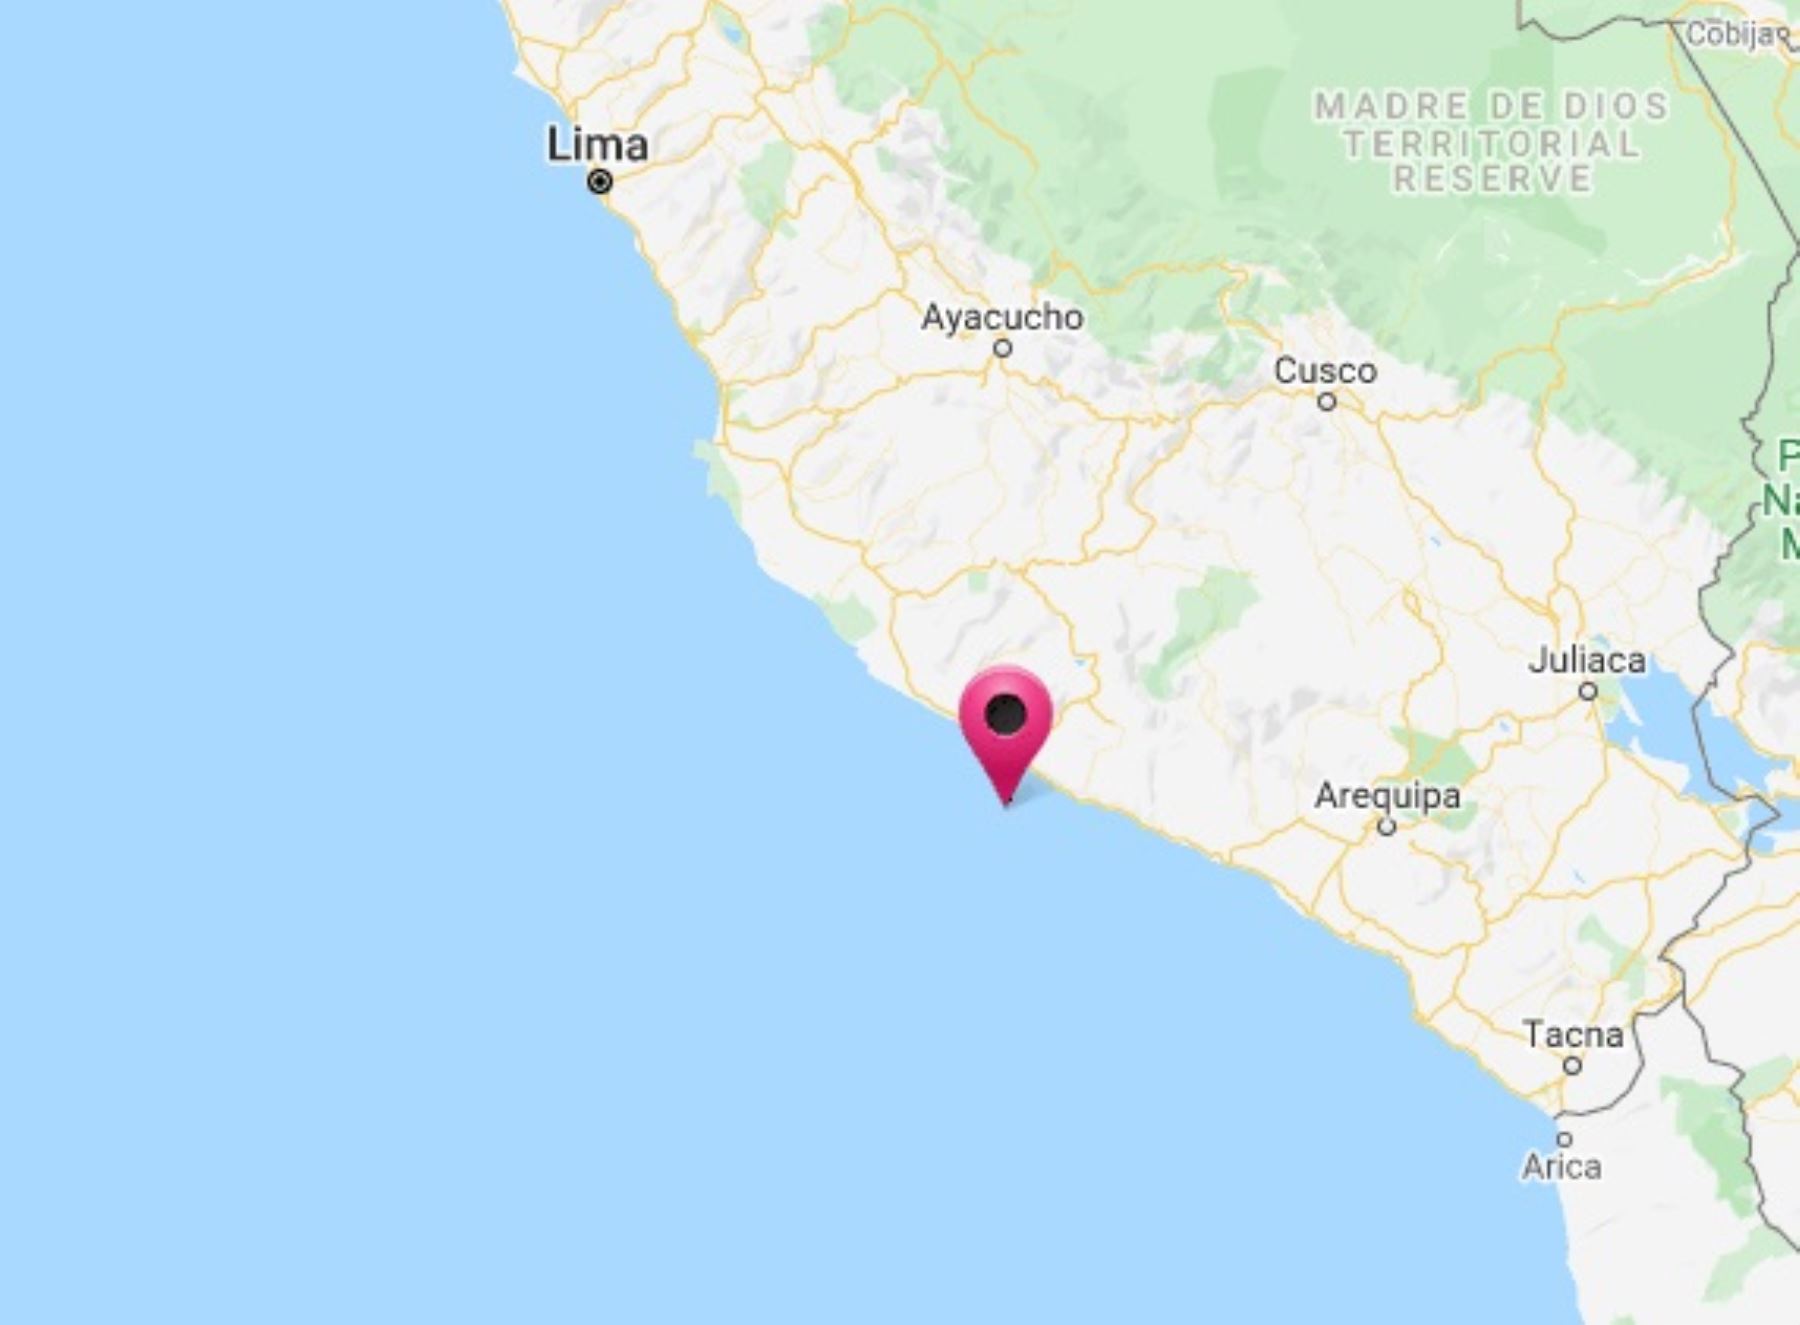 La costa de Arequipa fue remecida esta madrugada por temblor de magnitud 4.2, informó el IGP.